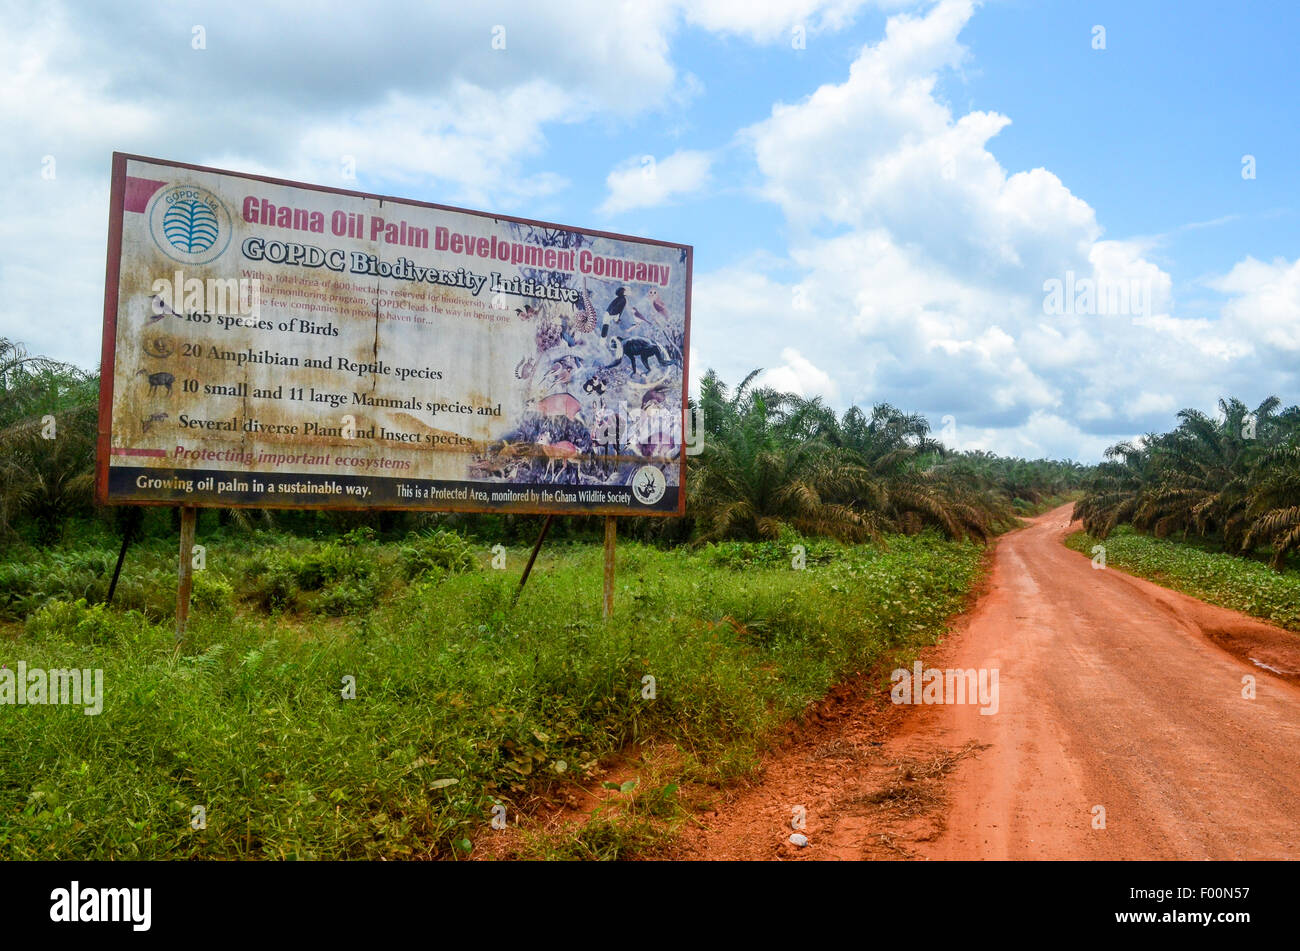 Strada sterrata nella campagna del Ghana attraversando un olio di palma e delle piantagioni di palme da olio development company segno Foto Stock